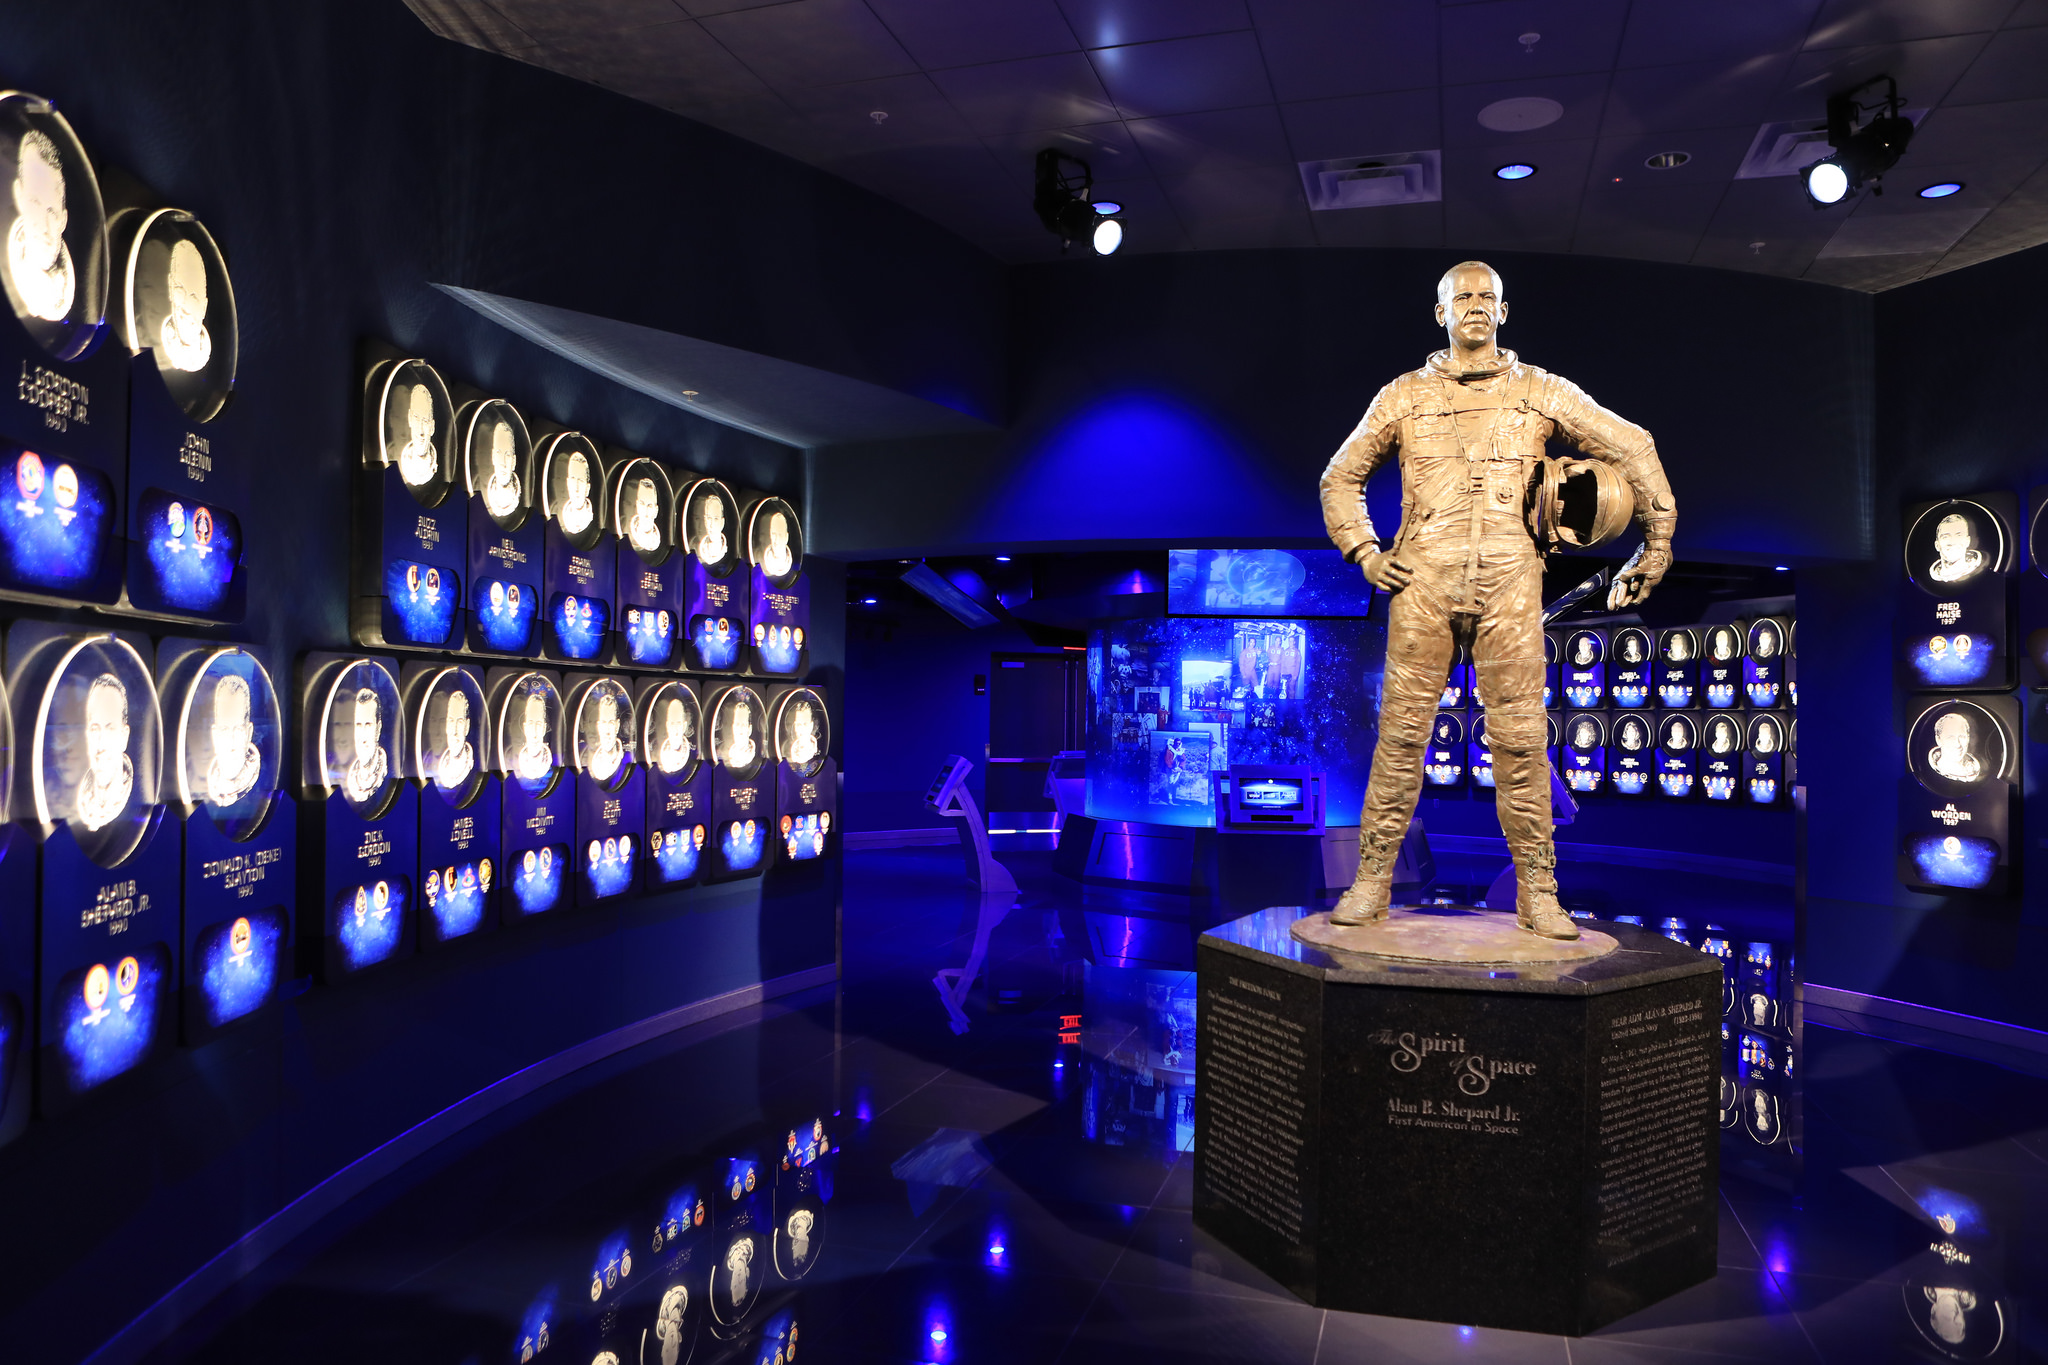 Mein Schiff Sehenswürdigkeit: Astronaut Hall of Fame im Kennedy Space Center